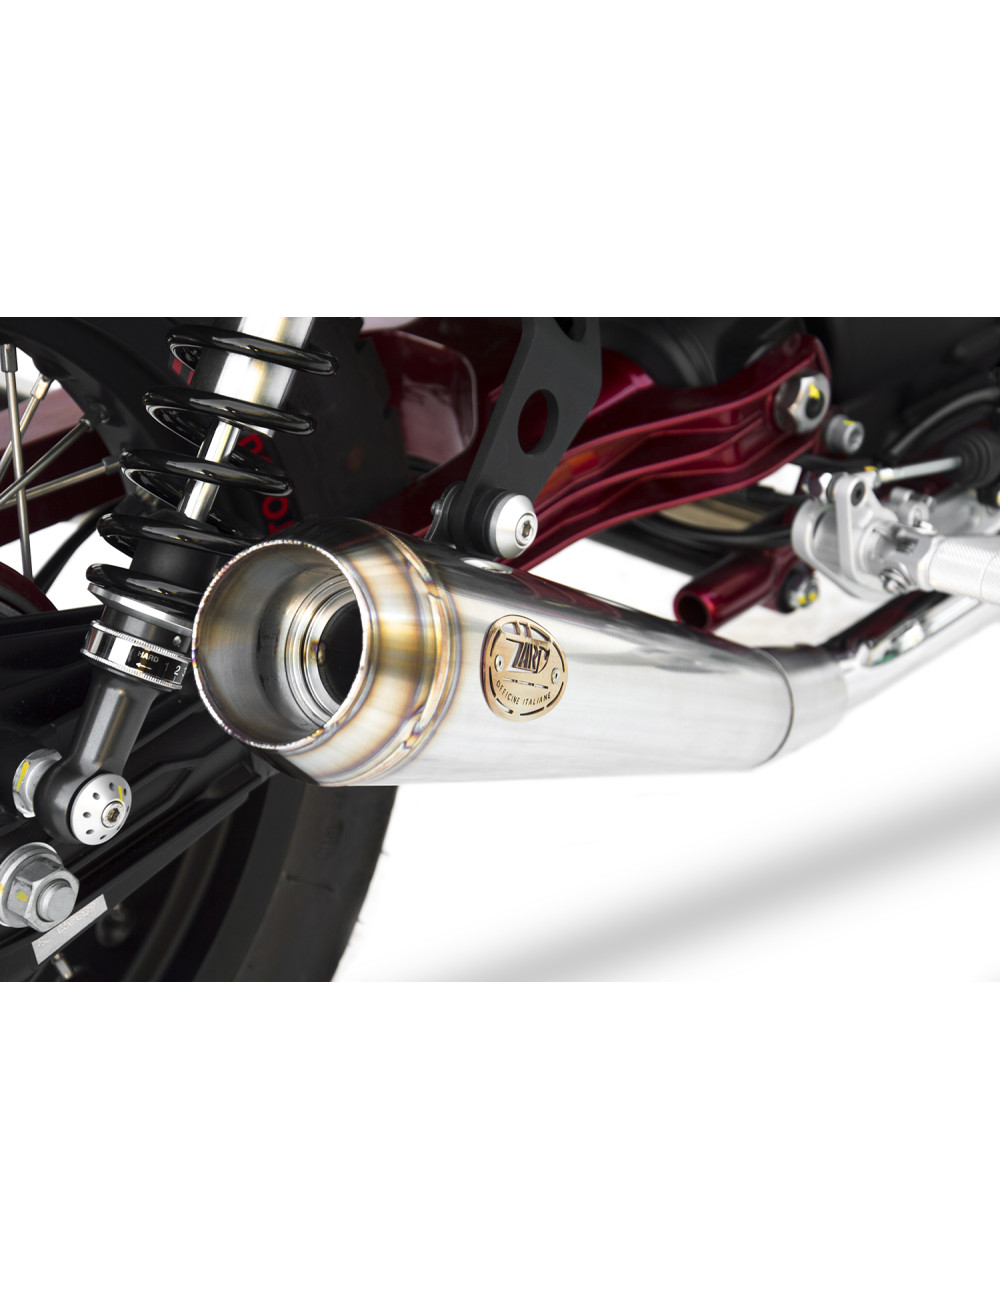 Moto Guzzi V7 II Racer 15-17 Slip-On Racer Stainless Steel Silencers